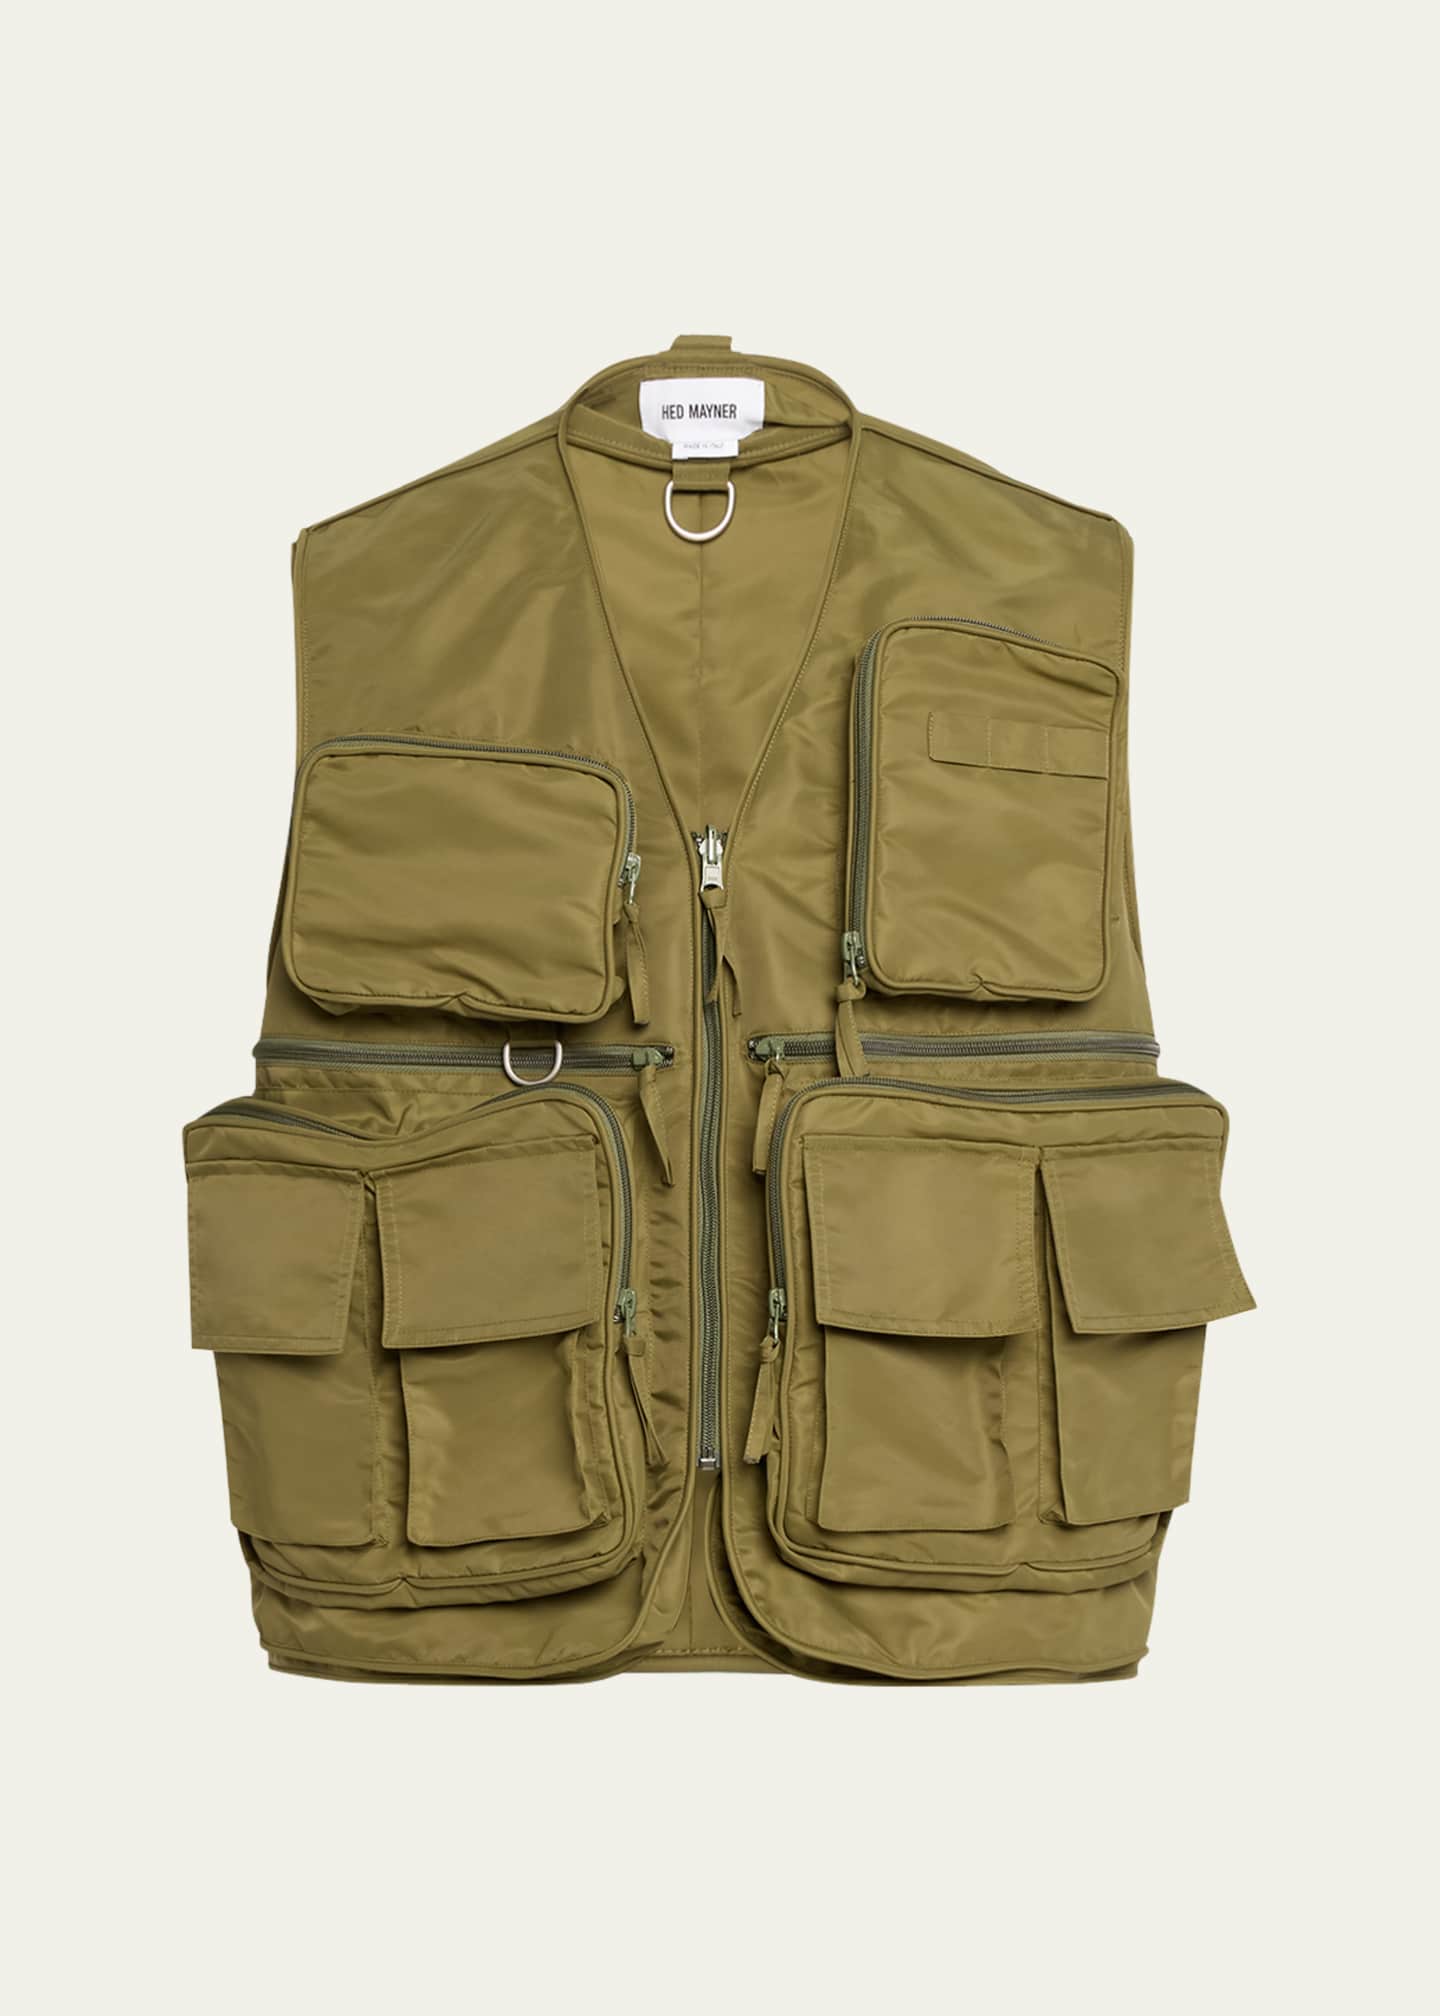 HED MAYNER Men's Cargo Tactical Vest